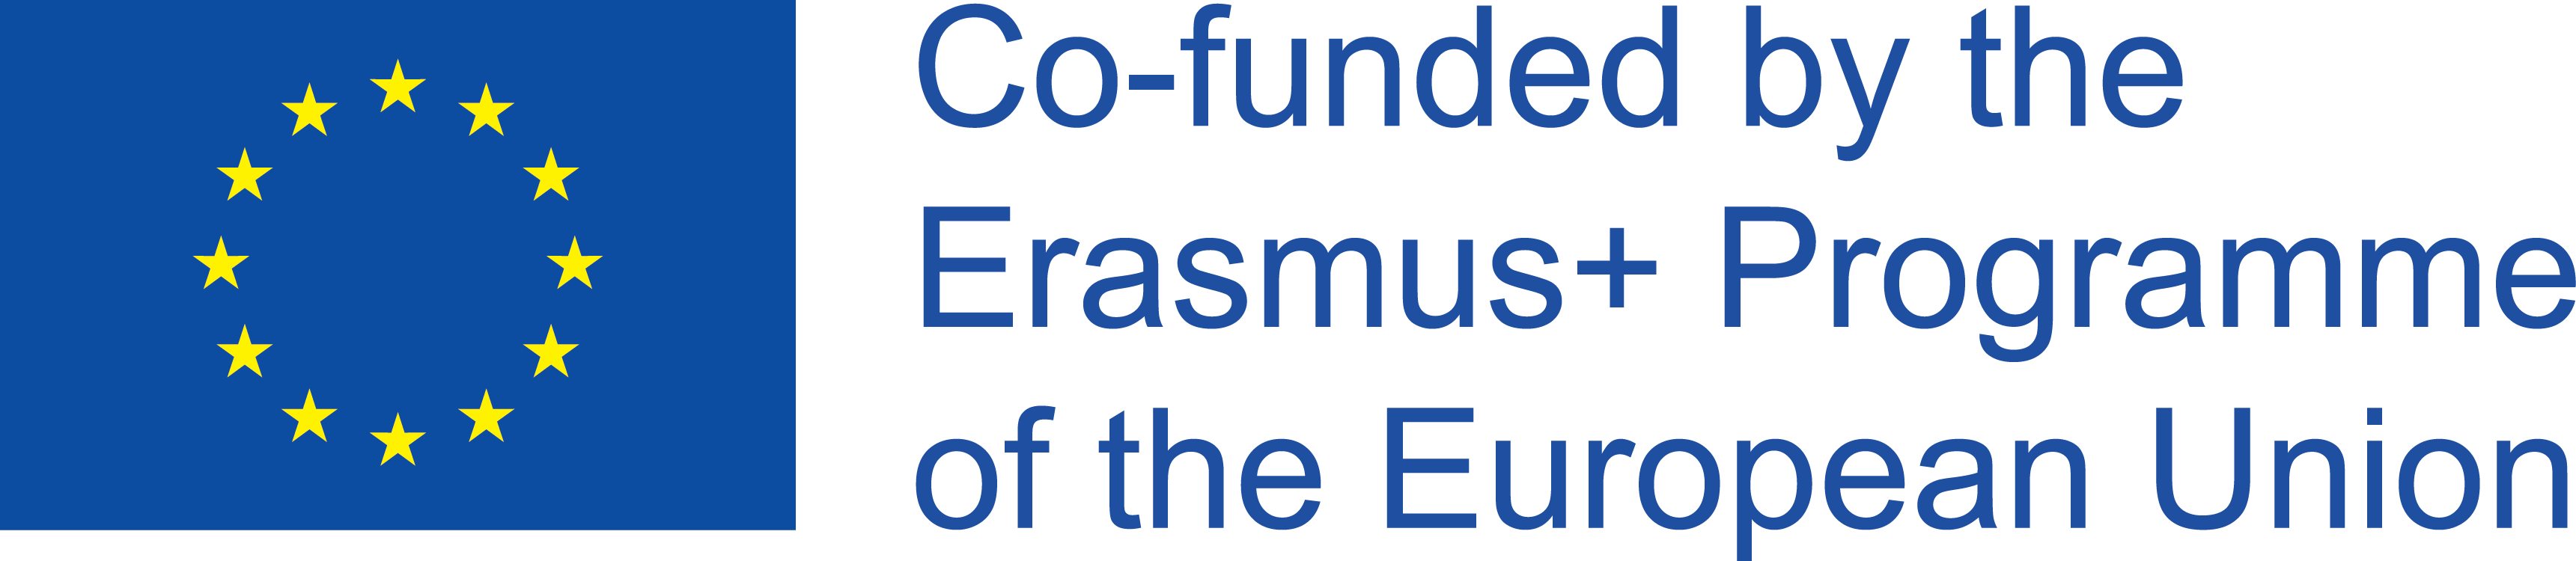 Co-finanziato dal programma Erasmus+ dell'Unione Europea